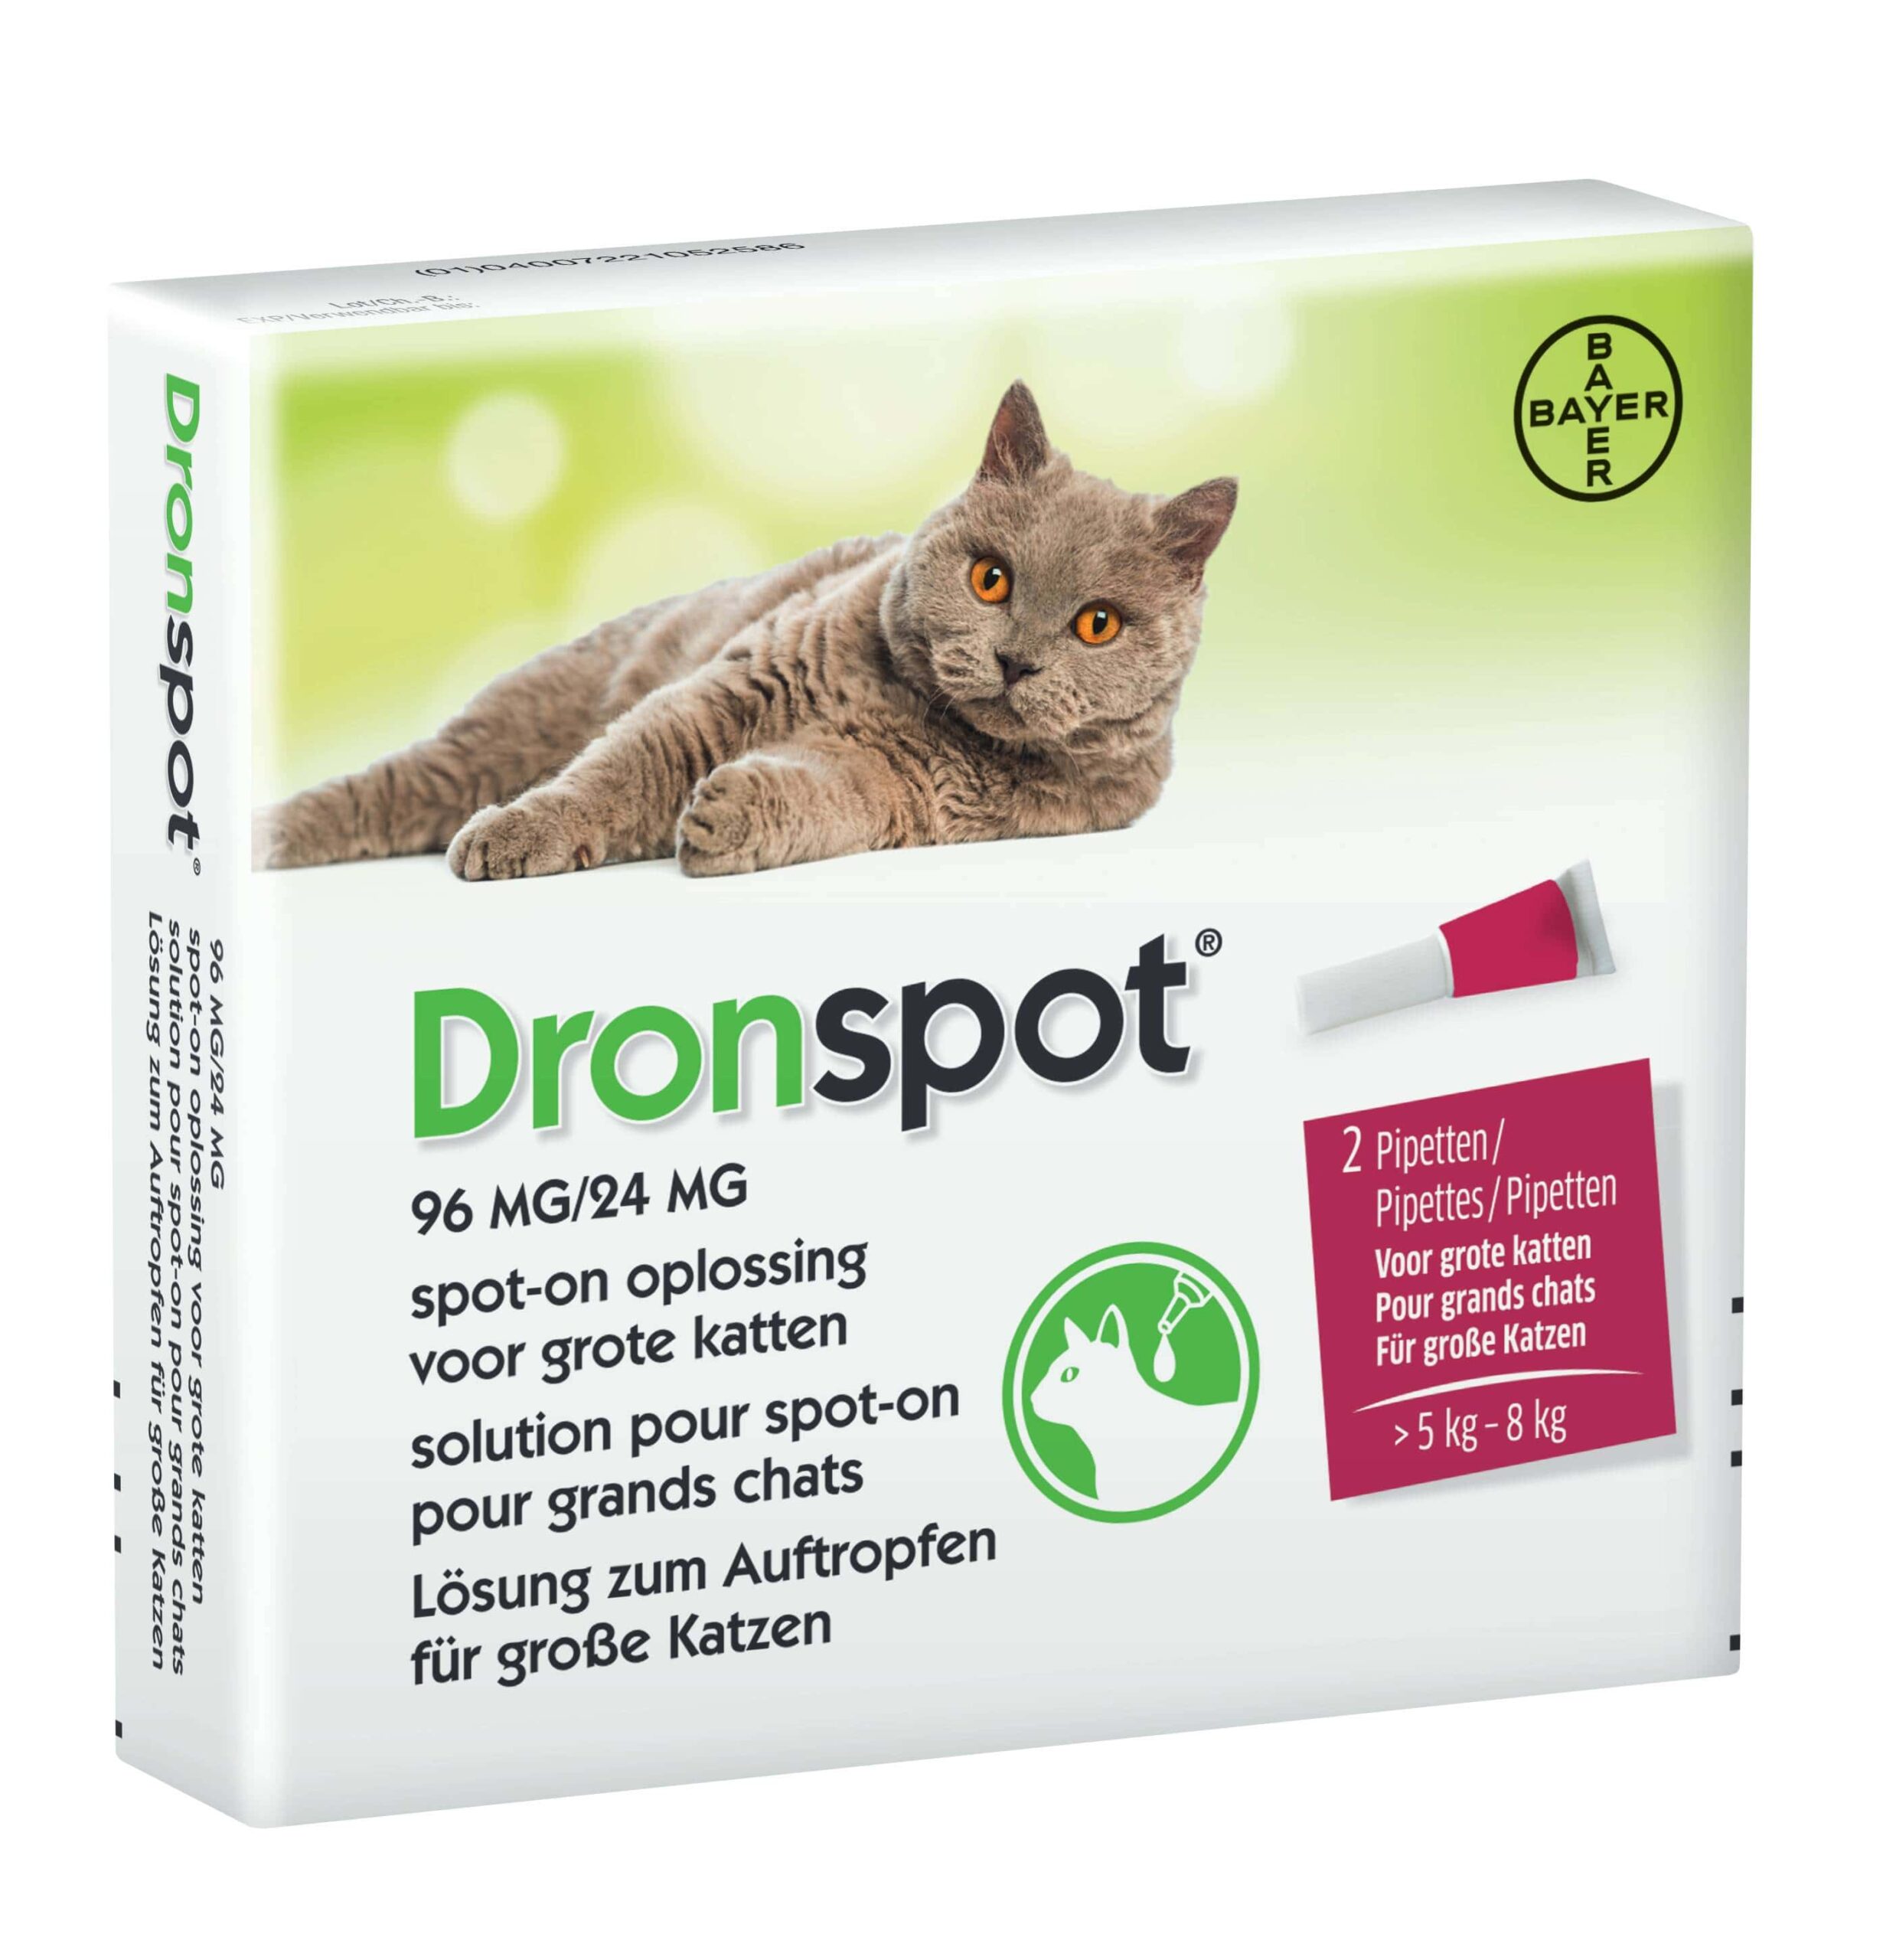 Succesvol Laster optocht Dronspot katten ontworming 2 pipetten voor in de nek. | BeestachtigGoed